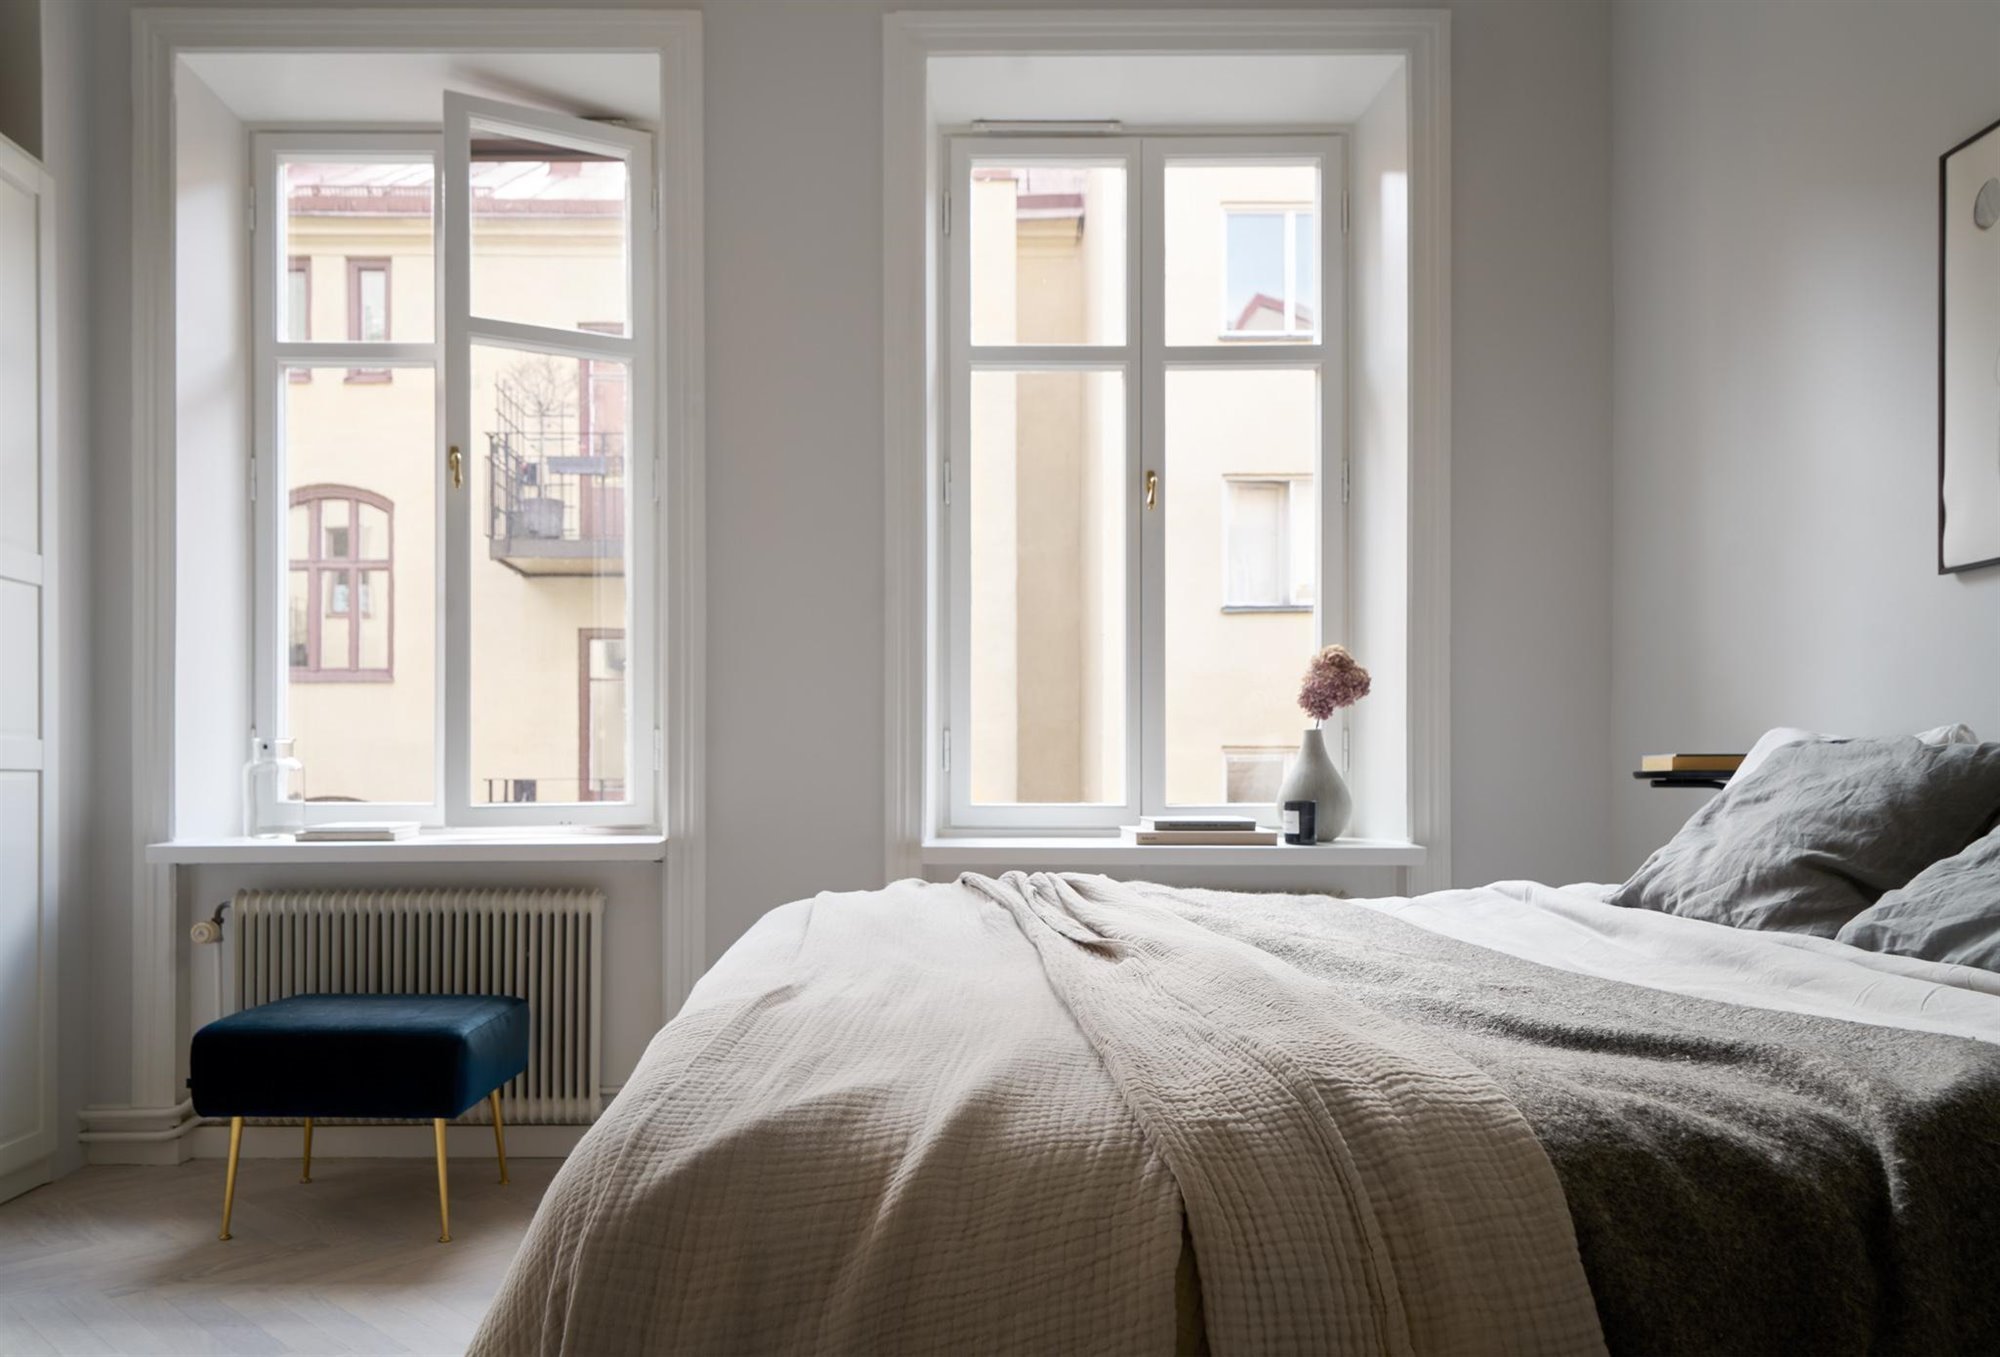 Piso con decoracion Nordica moderno con techos con molduras dormitorio con ventanas